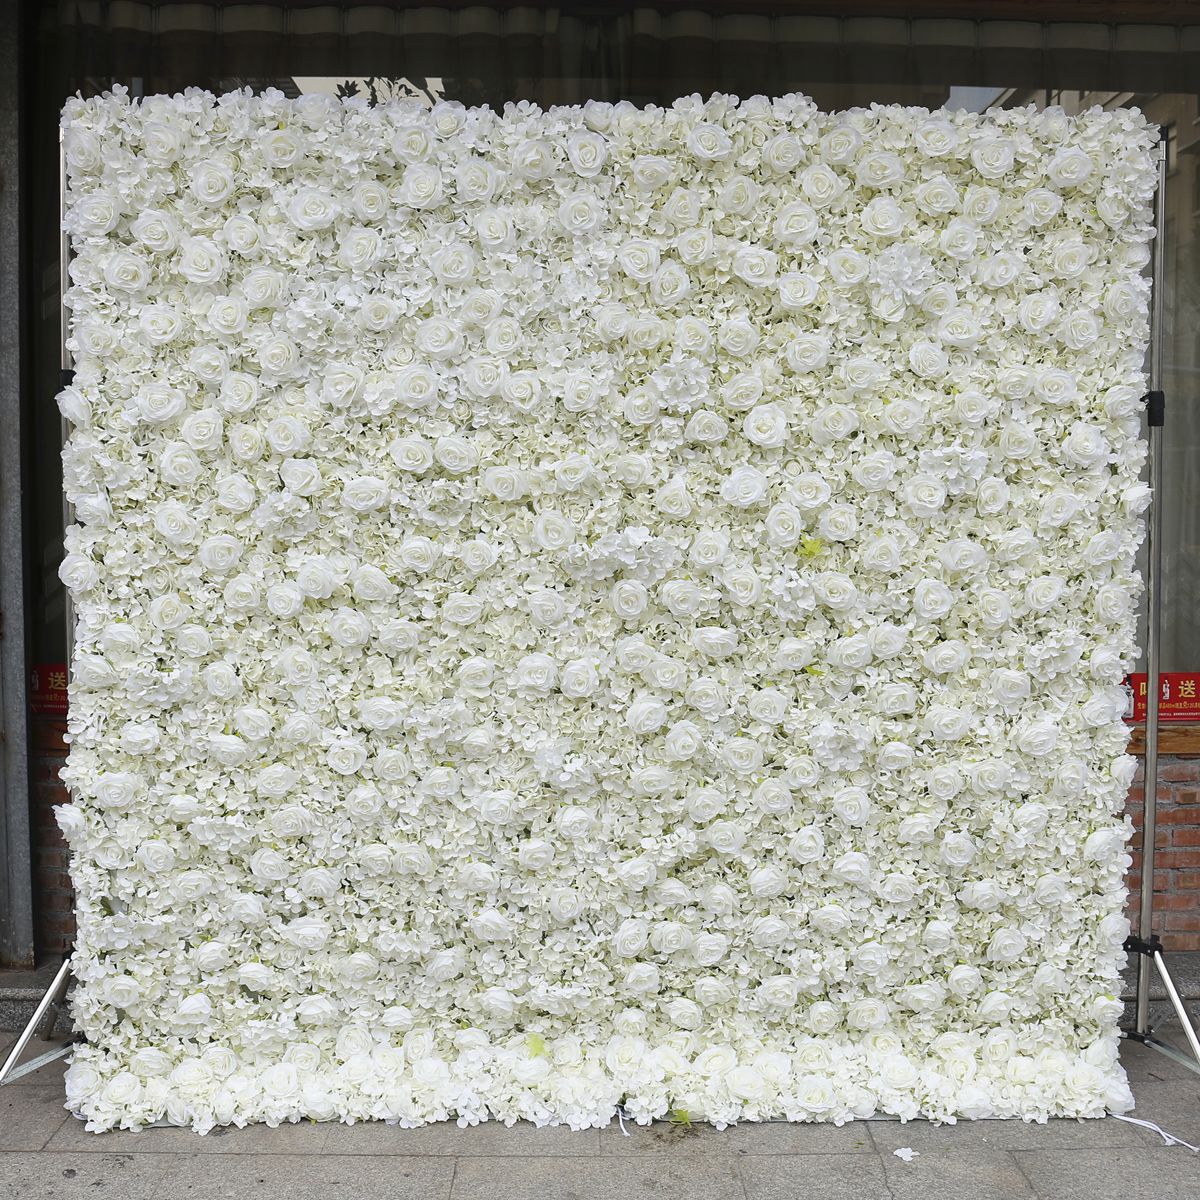 Amazon क्रॉस बॉर्डर सफेद कपड़े के नीचे नकली फूलों की दीवार की पृष्ठभूमि वाली दीवार गुलाब की कढ़ाई वाली गेंद शादी की सजावट